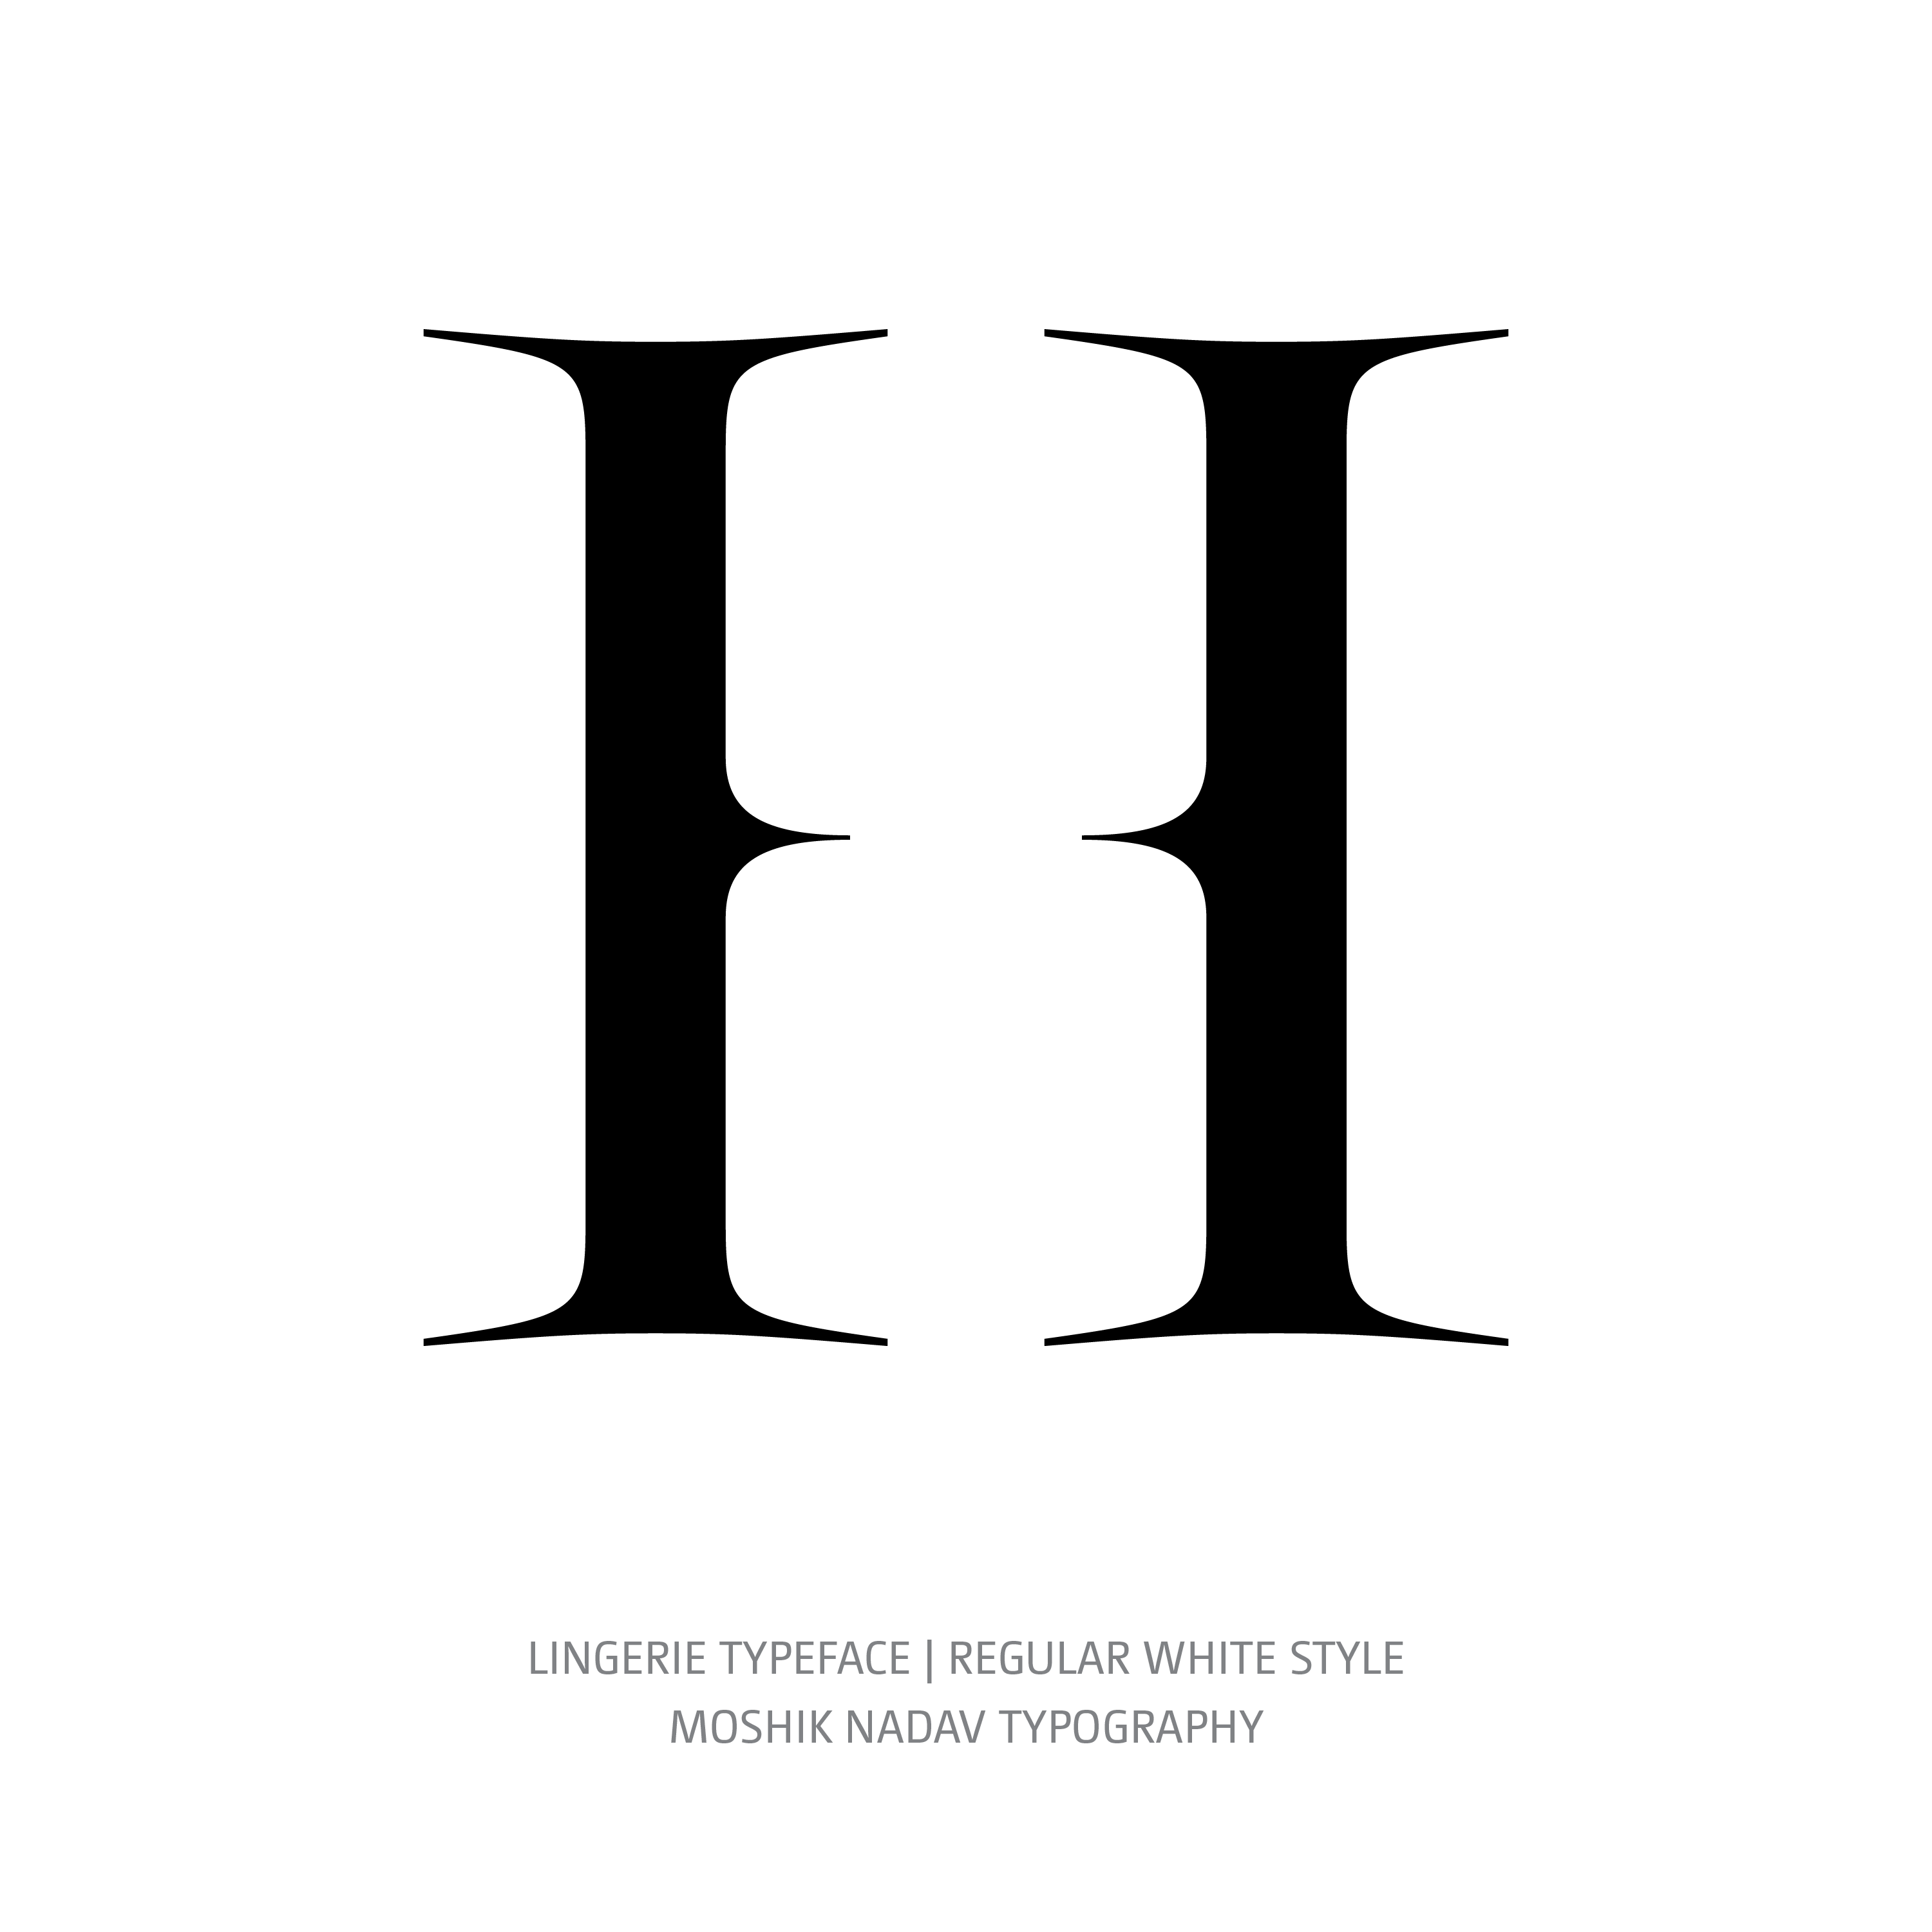 Lingerie Typeface Regular White H